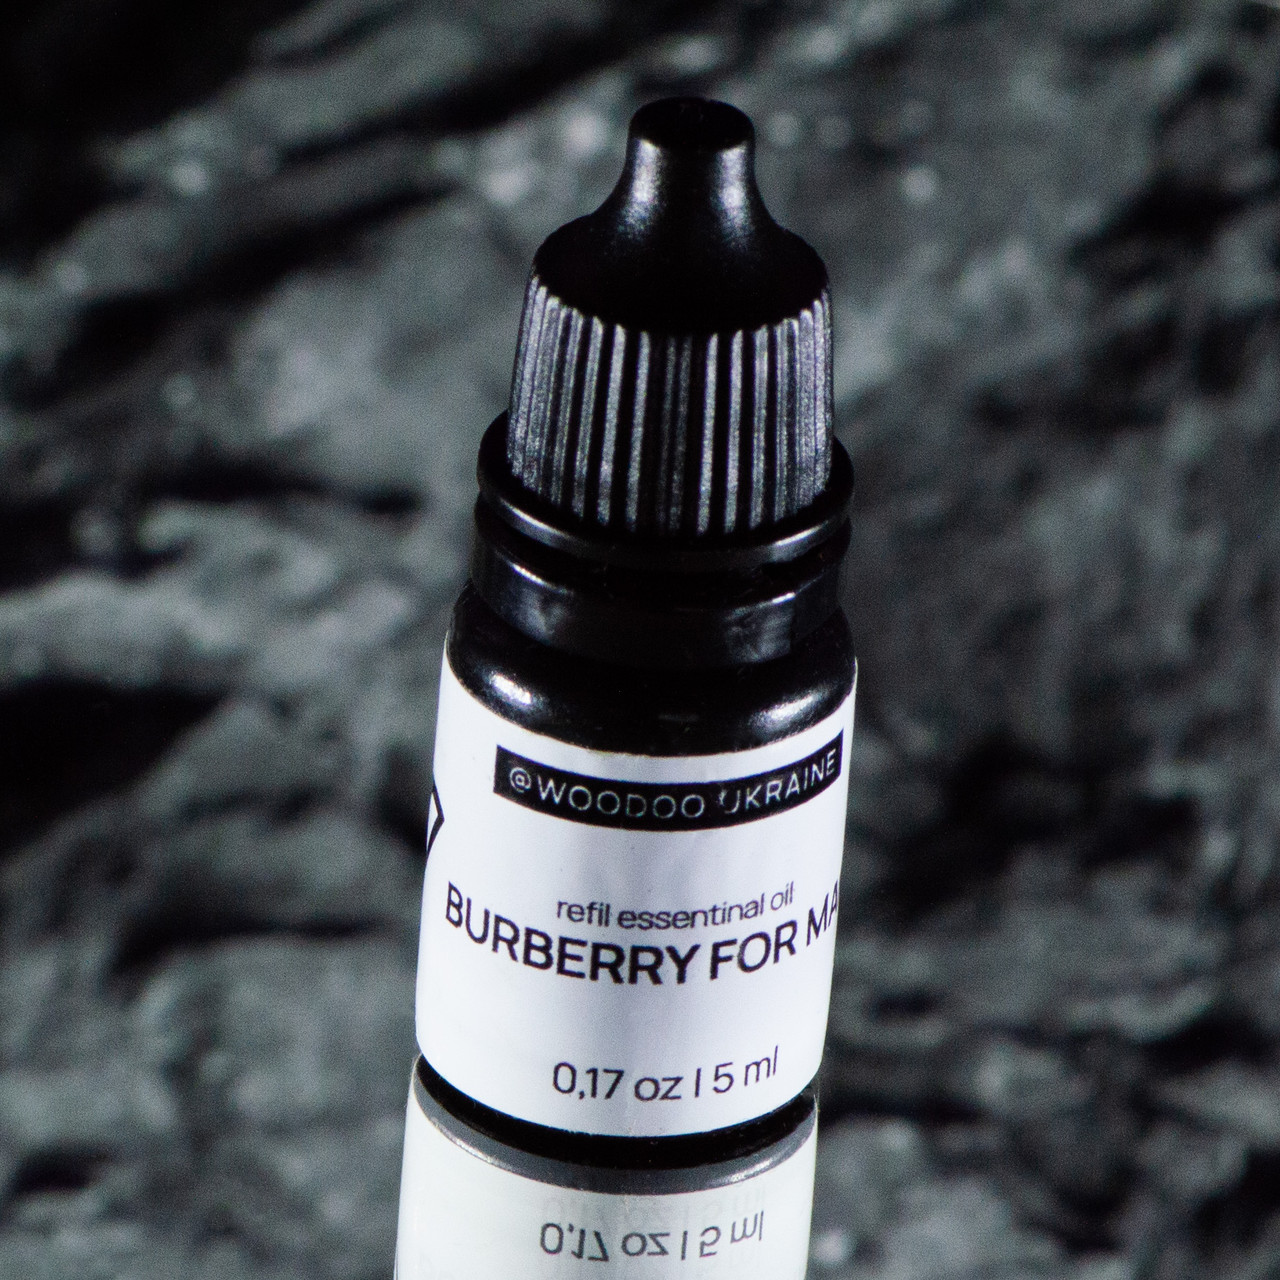 Ароматична олія "Burberry for man" парфумована для ароматизаторів WooDoo. США